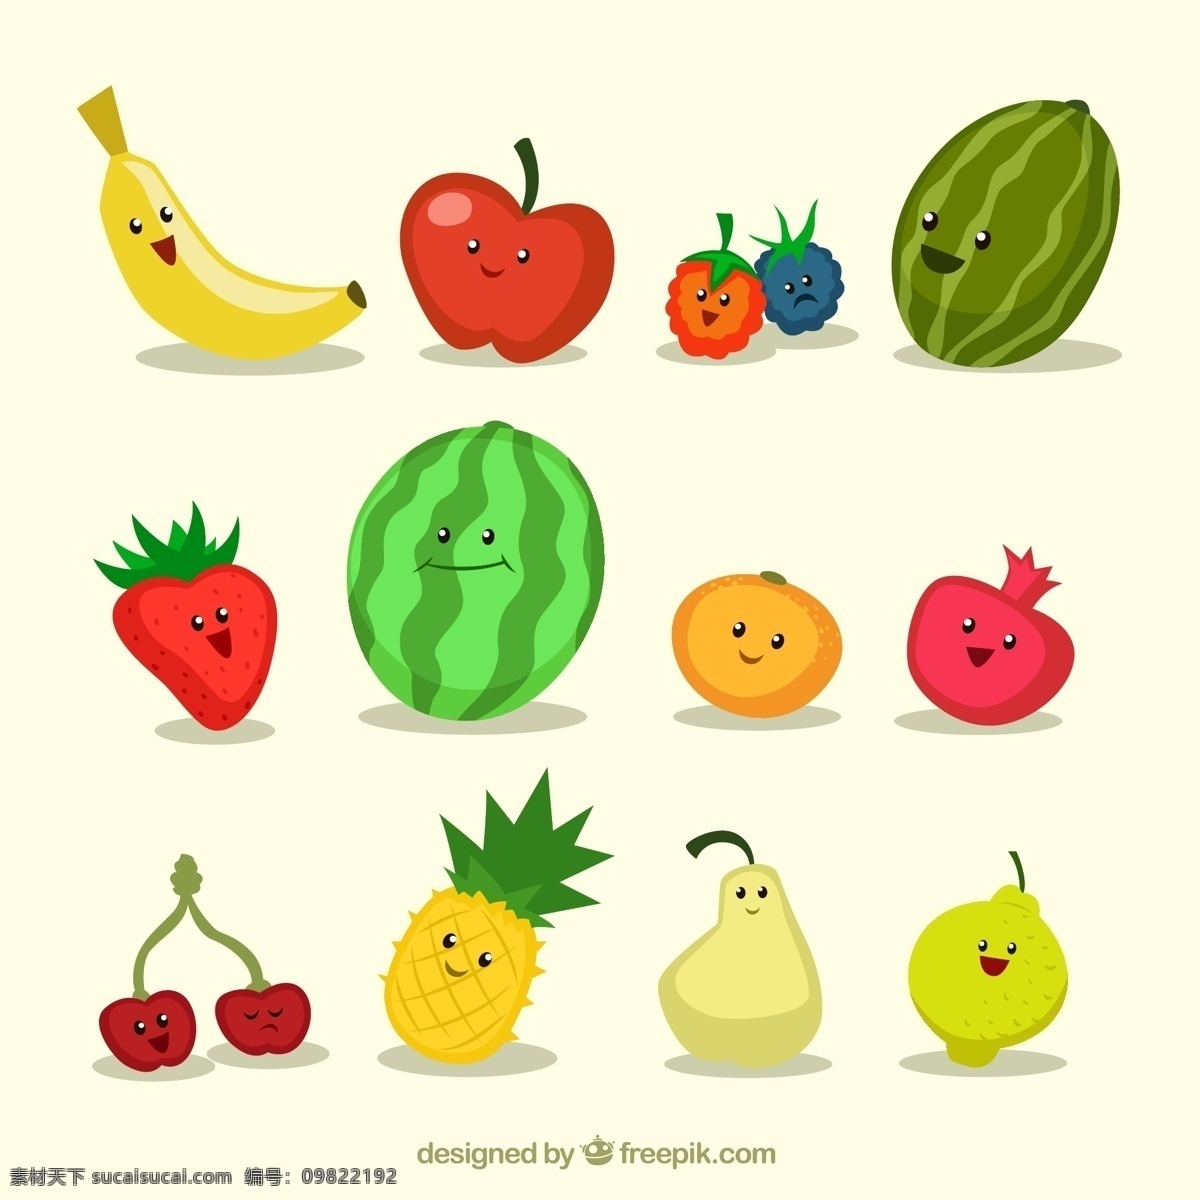 卡通水果 香蕉 苹果 草莓 西瓜 橙子 石榴 杨梅 樱桃 菠萝 梨 柠檬 水果 笑脸 表情